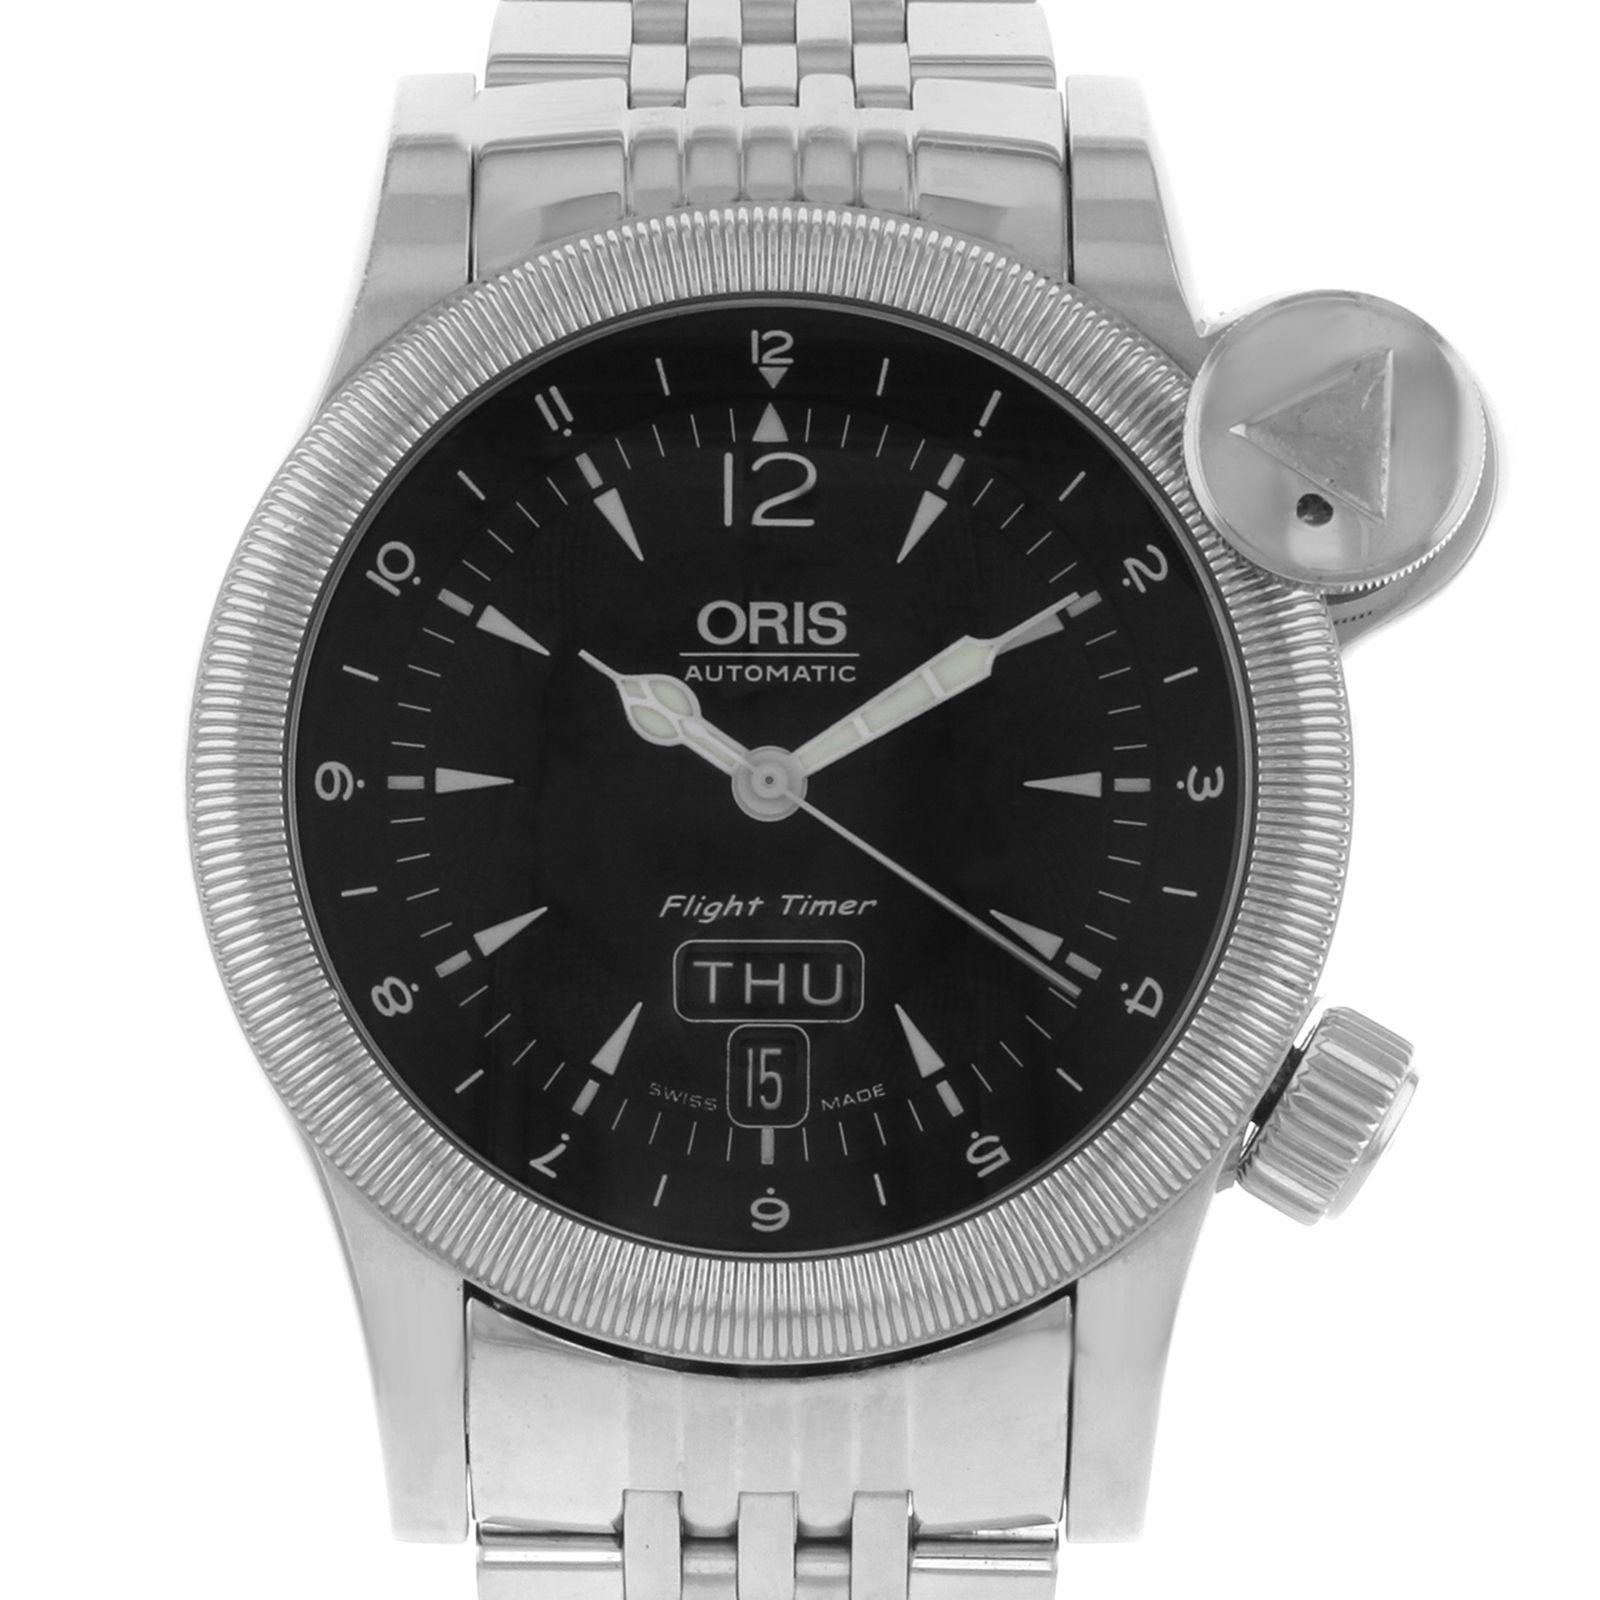 Cette Oris Flight Timer 63575684064 d'occasion est une belle pièce d'horlogerie masculine animée par un mouvement mécanique (automatique) qui est logé dans un boîtier en acier inoxydable. Elle possède un cadran de forme ronde, un chronographe, un